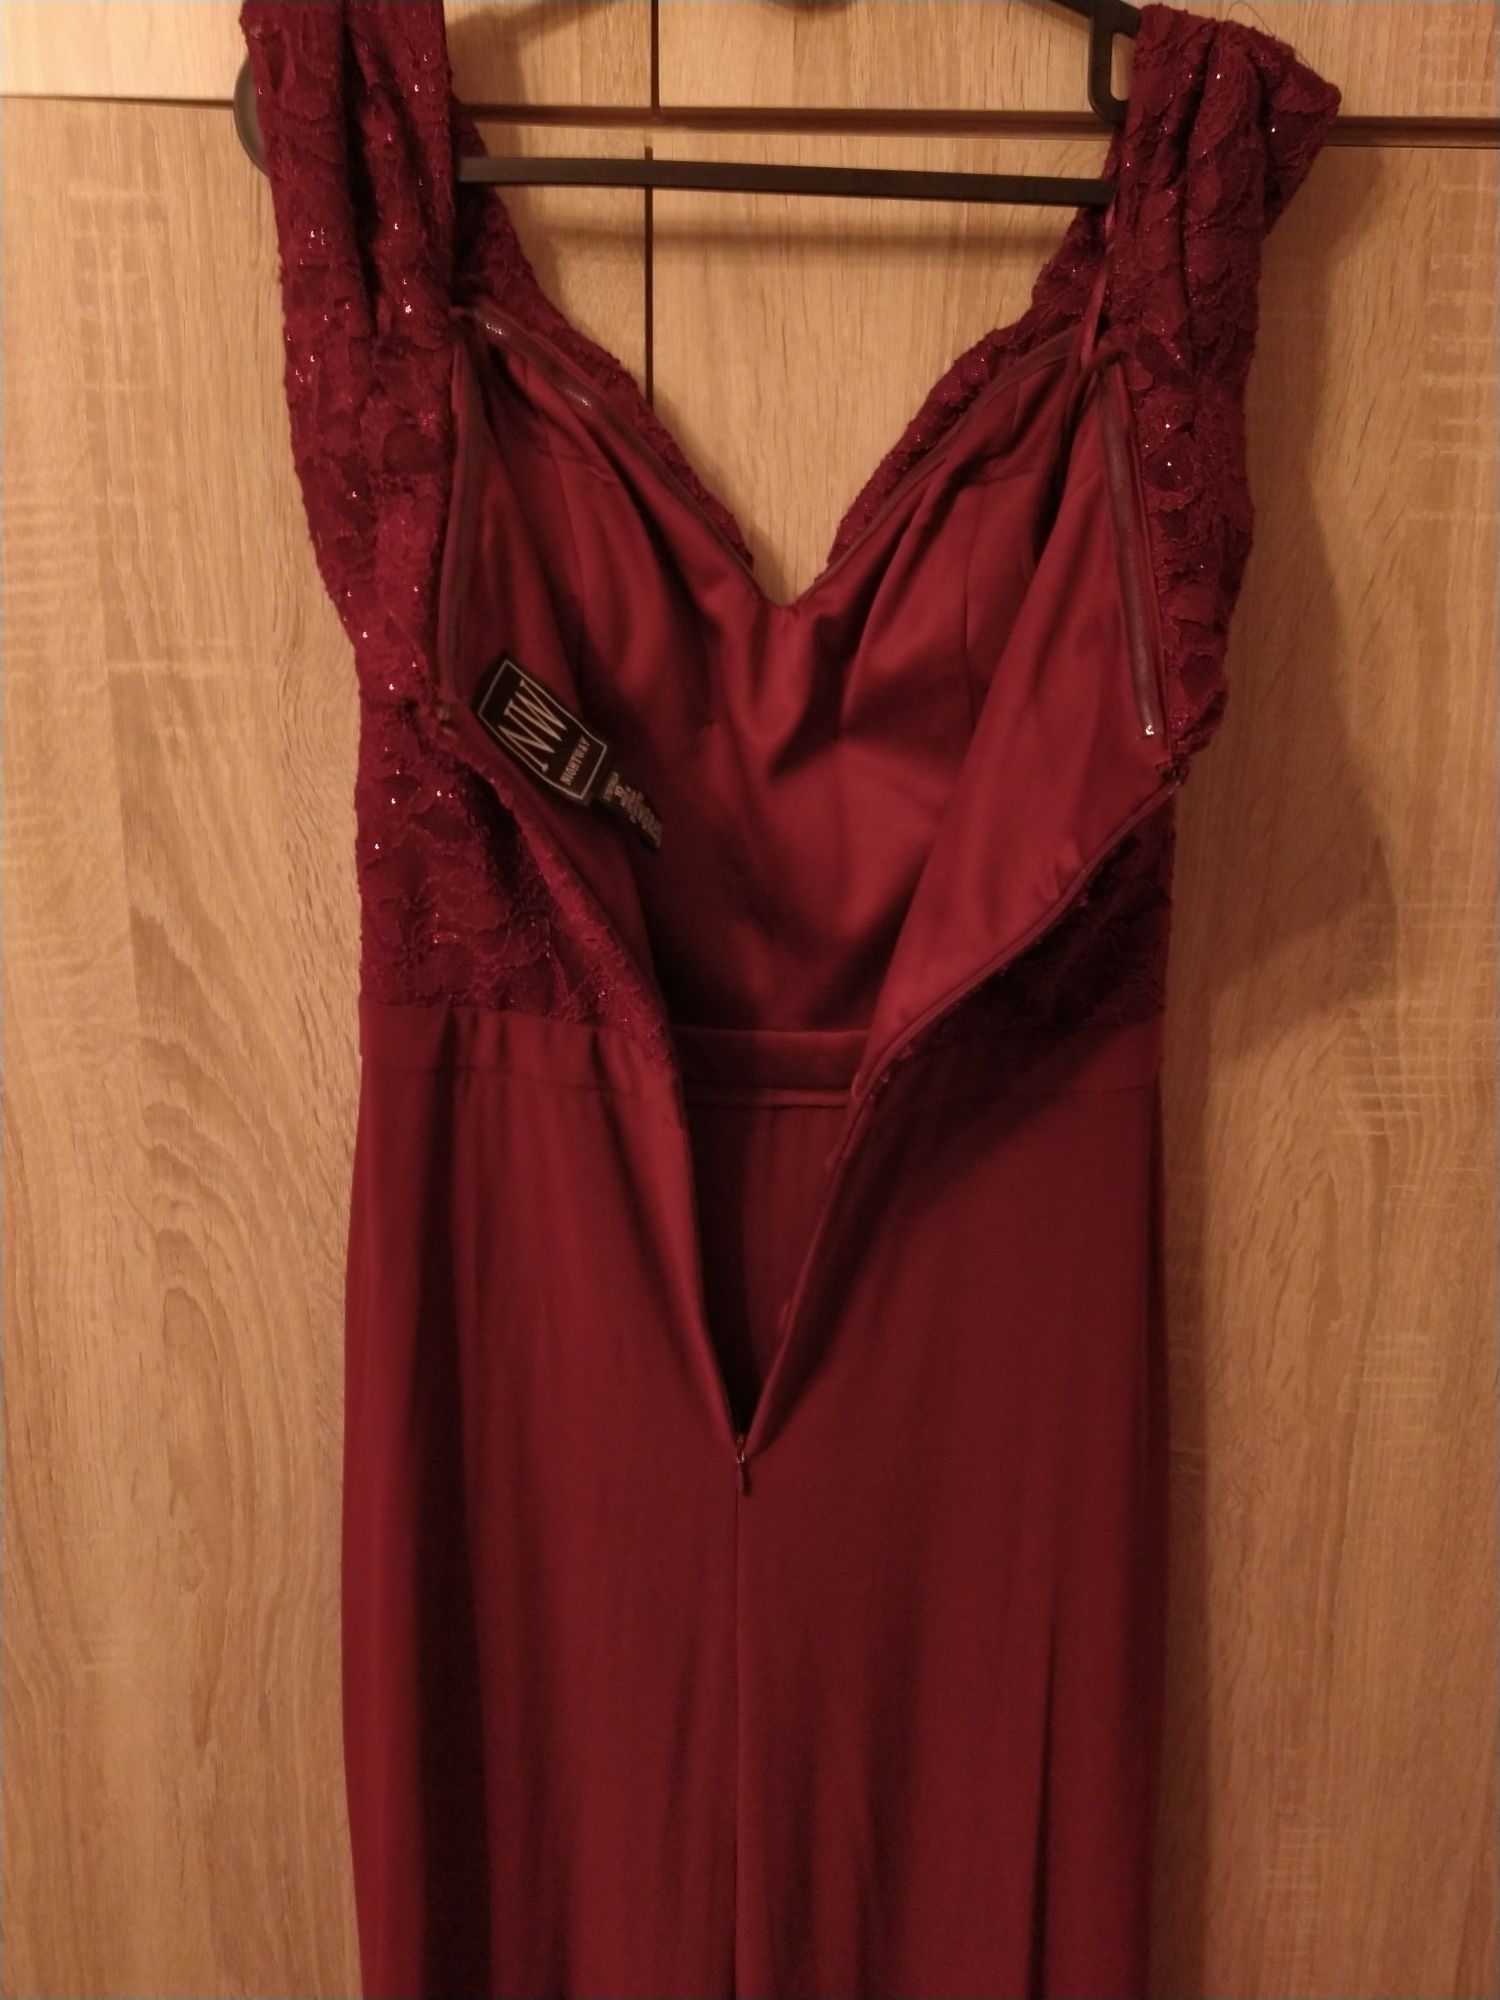 Rochie lungă eleganta pentru ocazii speciale roșu bordo